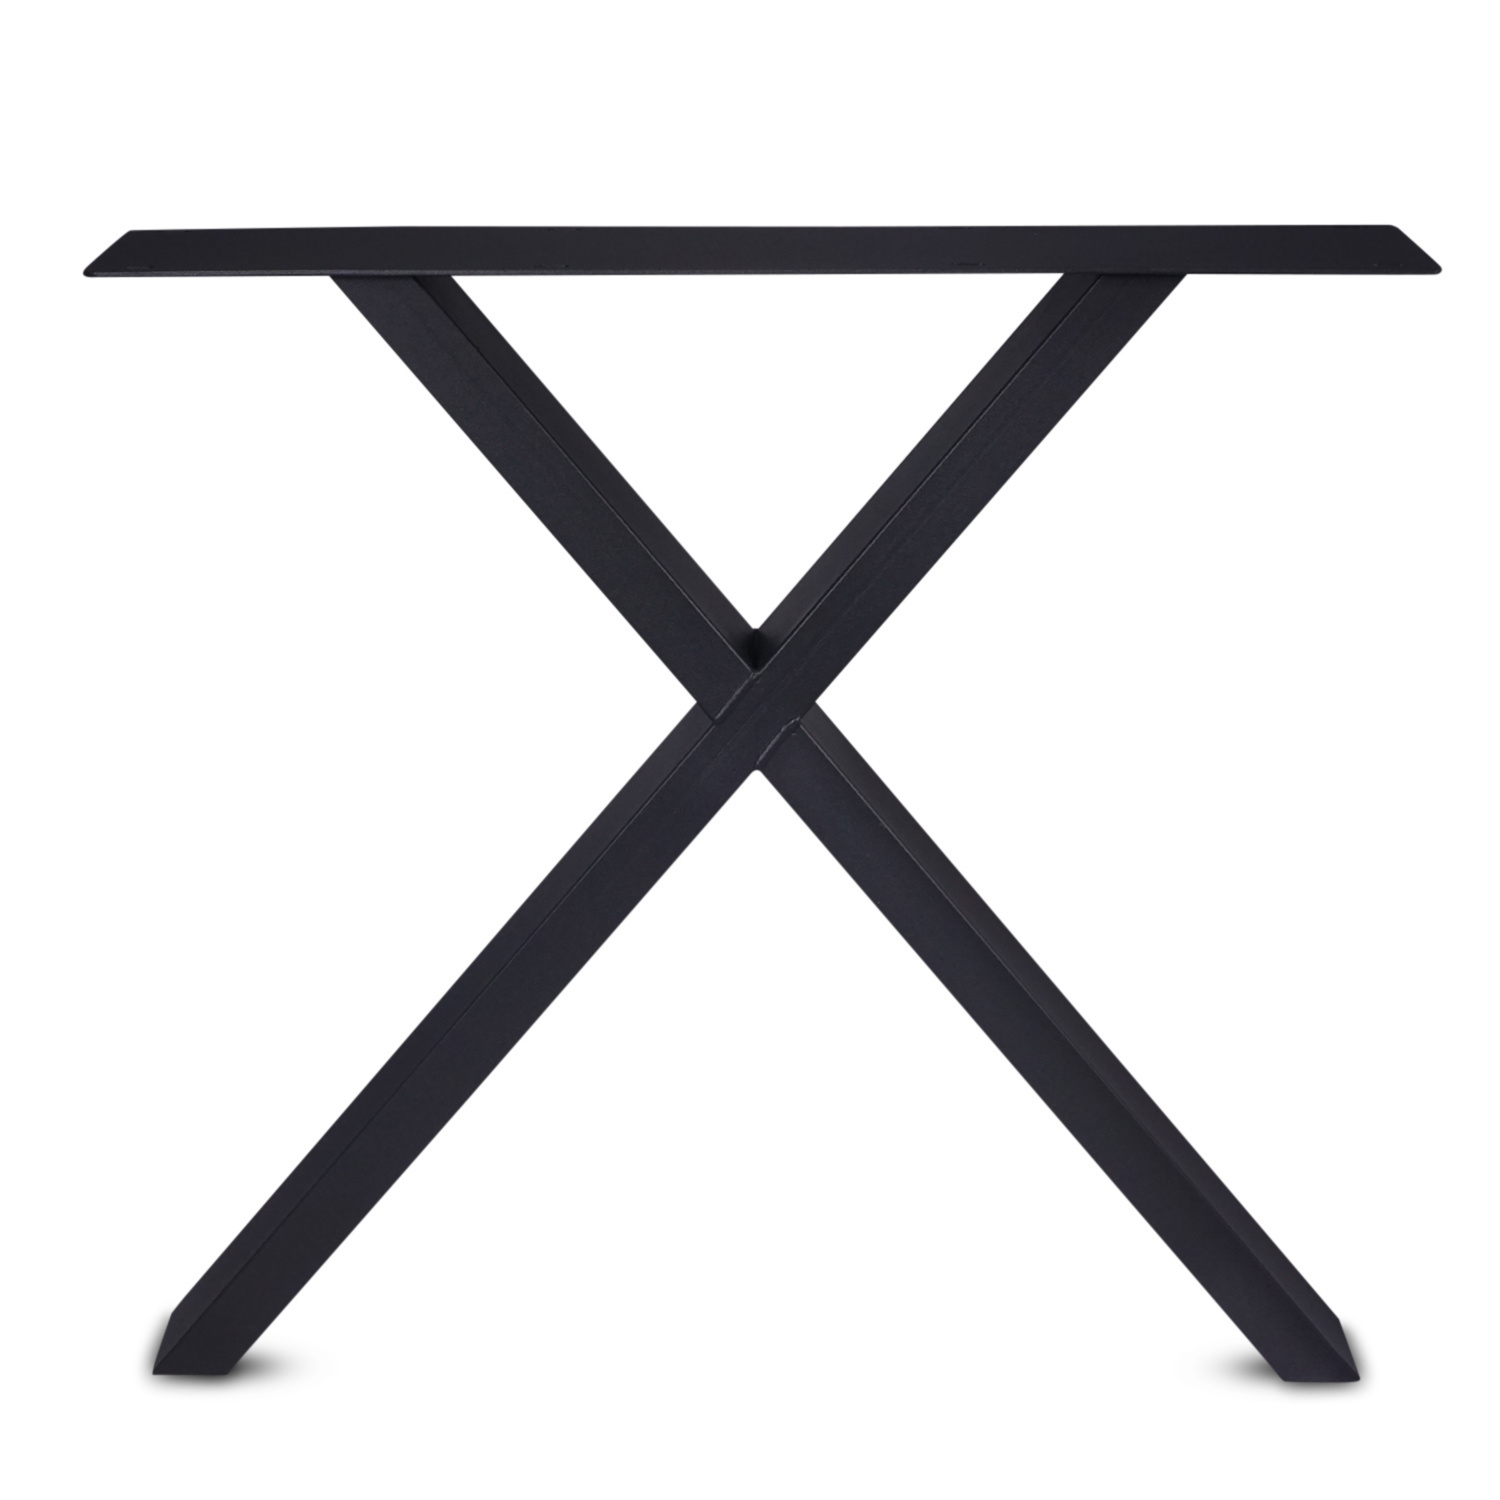  Stalen X-poot SET (2 stuks)  10x4 cm - 72 cm hoog - 78-77 cm breed - Kruis tafelpoot gecoat (zwart, antraciet of  wit)